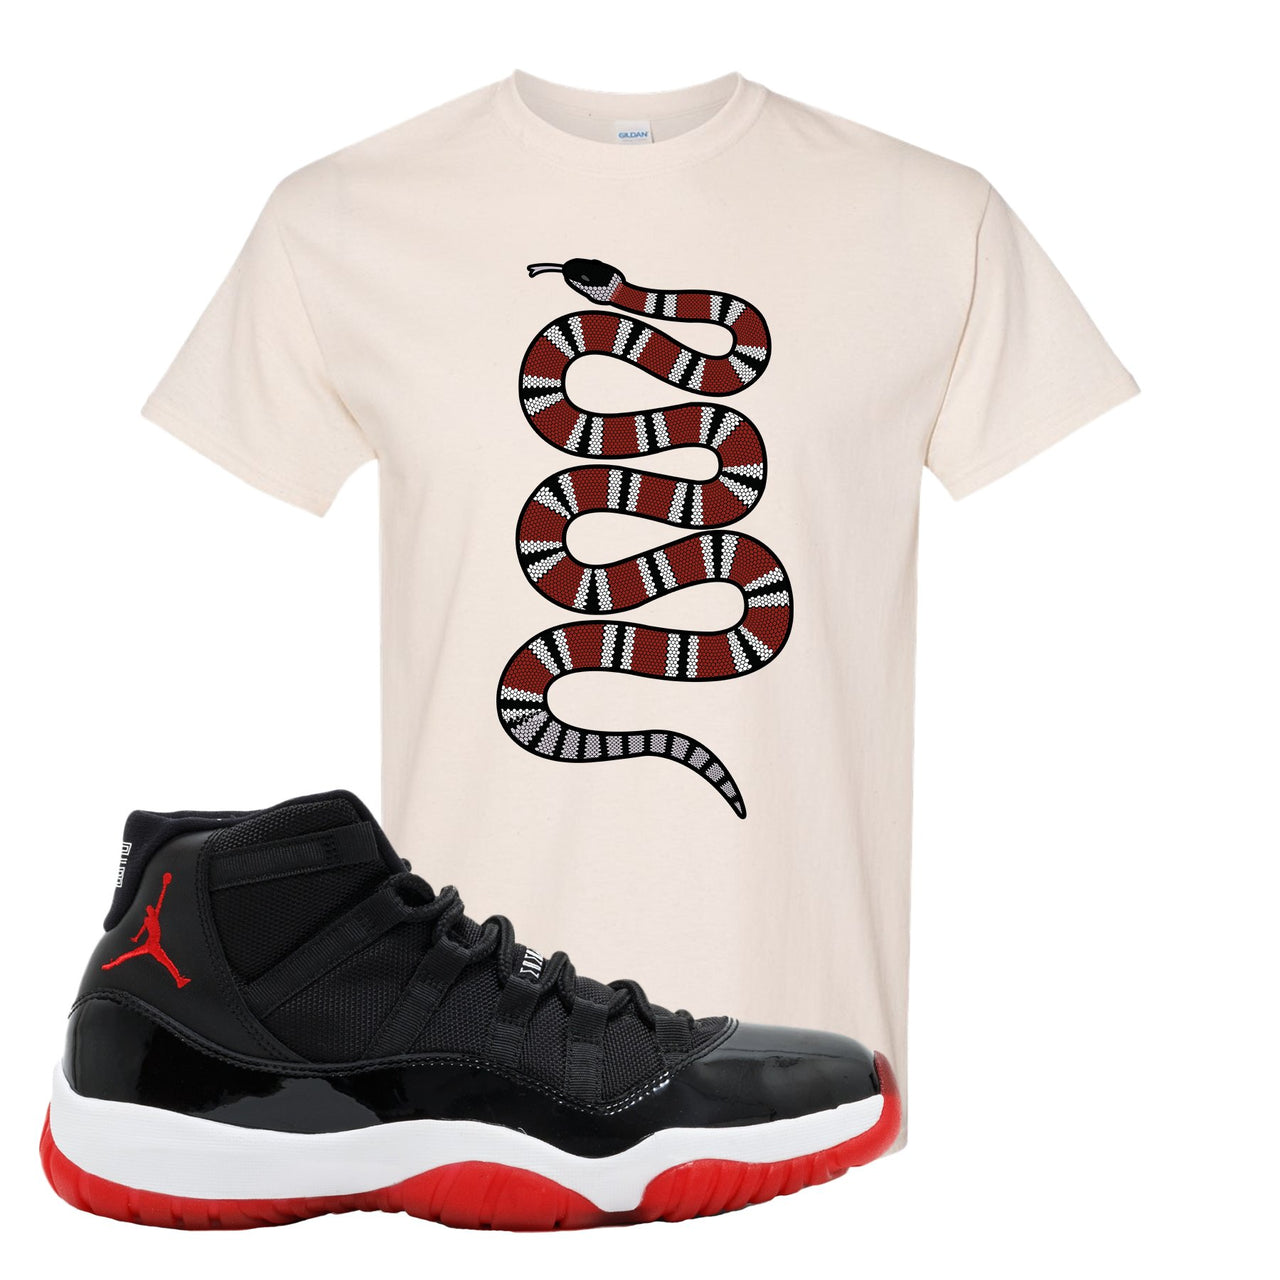 Jordan 11 Bred Coiled Snake White Sneaker Hook Up T-Shirt